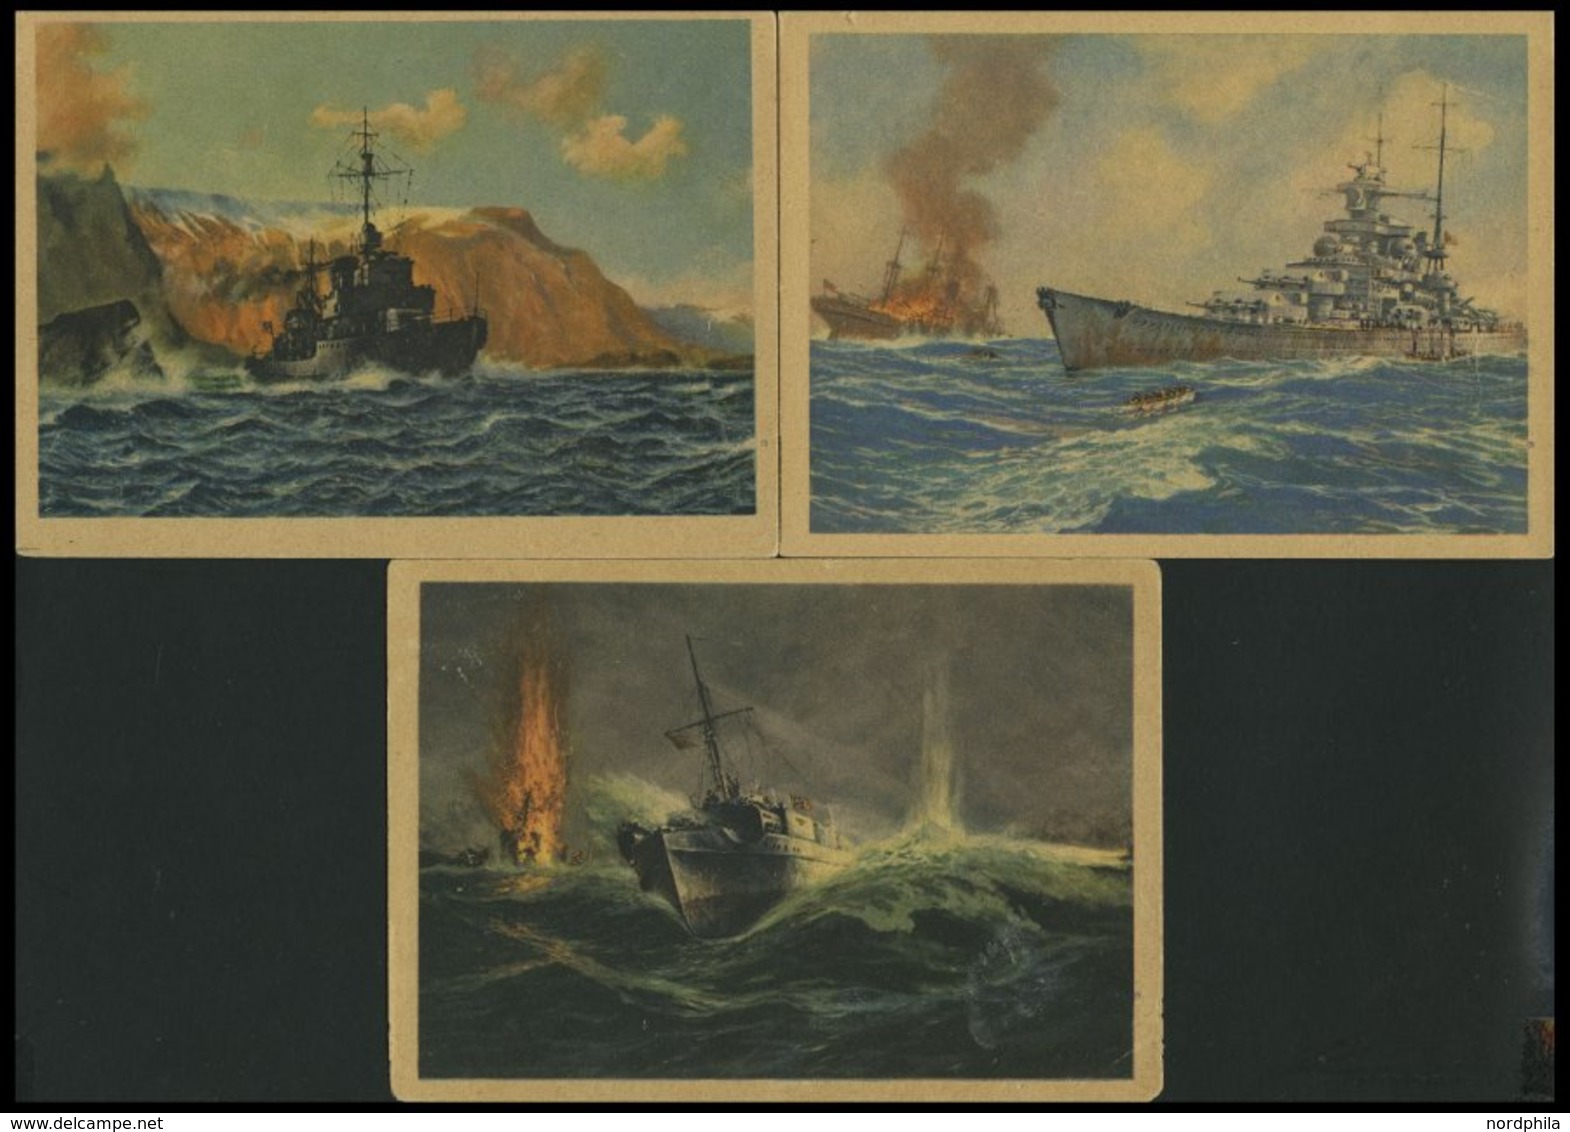 DEUTSCHE SCHIFFSPOST Seeschlachten Zweiter Weltkrieg: 3 Verschiedene Ungebrauchte Ansichtskarten Vom Marine Bilderdienst - Schiffahrt